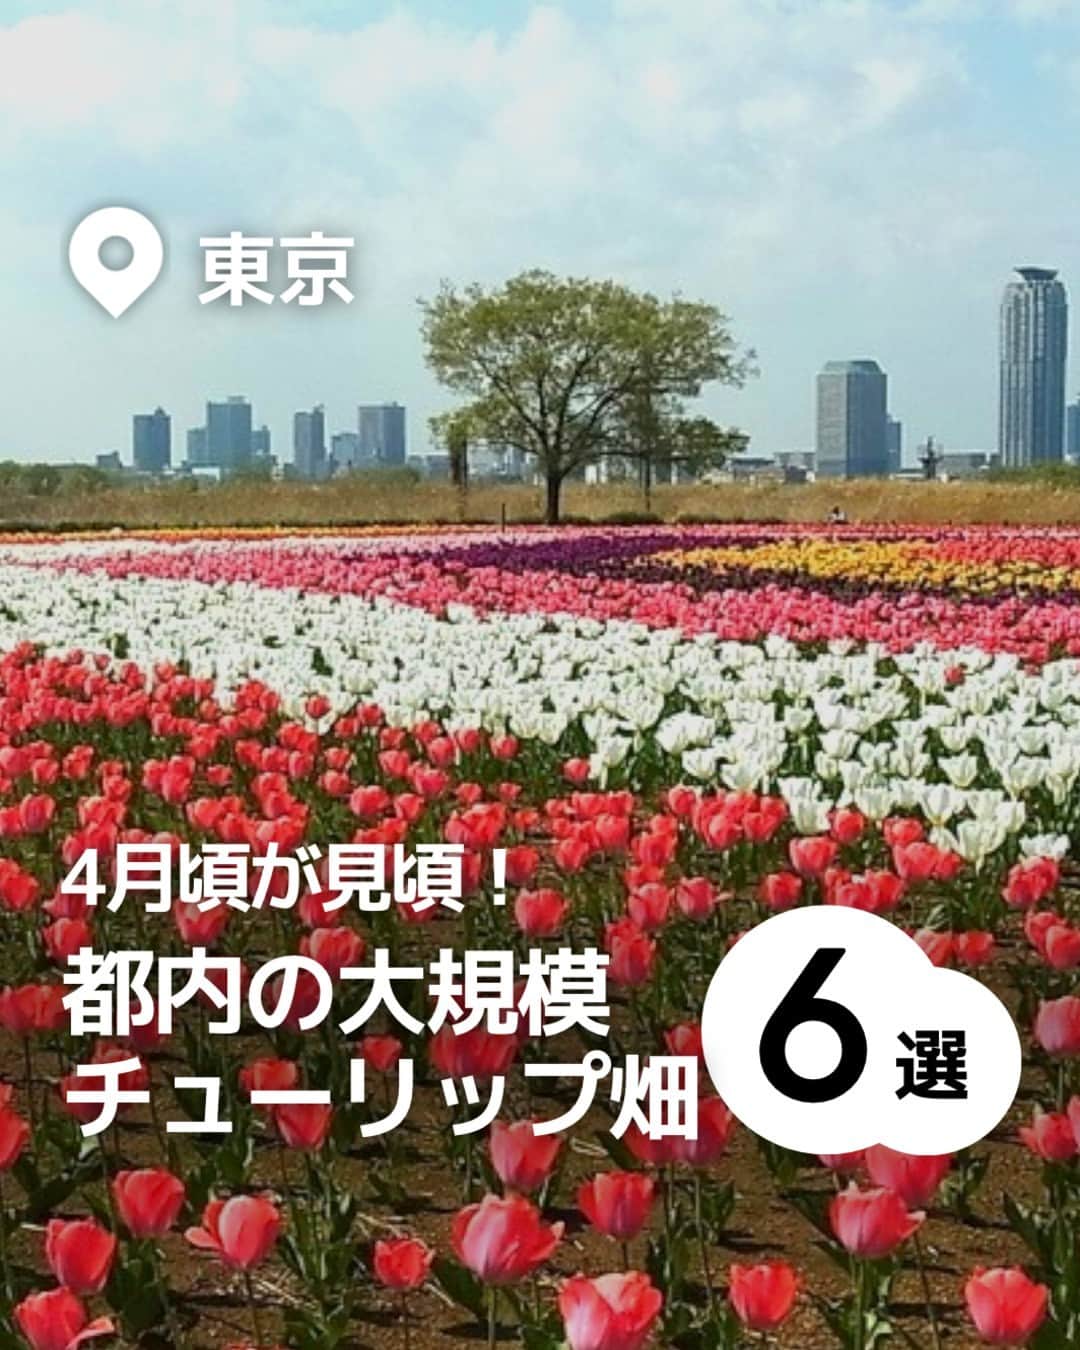 iko-yo（いこーよオフィシャル）さんのインスタグラム写真 - (iko-yo（いこーよオフィシャル）Instagram)「「都内の大規模 チューリップ畑6選」 今回ピックアップしたのは↓ ーーーーーーーーーーーーーーーーーー  📍東京都立川市 【国営昭和記念公園】 昭和天皇御在位50年を記念して造られた国営公園です。東京ドーム約39個分の広大な敷地では、1年を通してさまざまな花が観賞できます。また、園内を渓流広場から北へ進むと、巨大なトランポリン「雲の海（ふわふわドーム）」や日本一の大きさのハンモック「虹のハンモック」などが子供たちに人気の遊び場「こどもの森」もあります。  📍 東京都港区・江東区 【シンボルプロムナード公園】 公園内はウエスト・センター・イーストという3つのエリアに分かれており、それぞれにシンボリックなモニュメントやイベント会場が設置されています。新交通ゆりかもめ「お台場海浜公園駅」～「有明駅」の各駅より下車、徒歩すぐ。りんかい線「東京テレポート駅」「国際展示場駅」下車、徒歩すぐと都市にありながら、海と自然に囲まれた景色を満喫できるスポットです。  📍 東京都千代田区 【日比谷公園】 四季折々の花の名所としても人気のスポットです。敷地内には、幾何学文様の洋風花壇や噴水などがあり、公会堂や大小音楽堂、千代田区立日比谷図書文化館などの文化施設もあって、1年を通してさまざまなイベントが開催されます。  📍 東京都足立区 【足立区都市農業公園】 「自然と遊ぶ、自然に学ぶ、自然と共に生きる」をテーマにした農業公園。子供たちには遊具広場にある長い滑り台や遊具アスレチックが人気です。また、園内には田んぼや畑があり、無農薬無化学肥料での栽培が行われているほか、年間を通じて、自然あそびや染め物体験、ミツバチ観察などさまざまな教育プログラムを開催。 📍 東京都江東区 【猿江恩賜公園】 スポーツを中心に、気持ちの良い広場でさまざまなアクティビティが楽しめる公園です。園内の北側には、テニスコートやジョギングコース、大人向けの健康遊具が設置された健康広場があるほか、遊具がある冒険広場があるので、子供連れは遊んで帰るのがおすすめ！  📍 東京都羽村市 【根がらみ前水田】 今年も「はむら花と水のまつり2023」が開催されます。3/25～4/9の「前期さくらまつり」は、例年とは異なり、桜づつみ公園、水上公園・親水公園にて開催。4年振りに飲食店等の模擬店も出店予定となっています。「後期チューリップまつり」は、4/10～4/20に根がらみ前水田にて開催されます。  ※2023年3月24日時点の情報です。 最新の情報は公式HPや「いこーよ」サイトでご確認ください。 ーーーーーーーーーーーーーーーーーーー おでかけ情報量は日本最大級！ 子どもとお出かけ情報サイト「いこーよ」 「親子でおでかけしたい場所」をご紹介させていただいています！  お子さんとのおでかけの思い出の写真を、このアカウントをフォローの上#いこーよ をつけてぜひ投稿してください。魅力的な写真は、いこーよ公式SNSで紹介させていただきます！  募集中タグ＃いこーよ  「子どもと行きたい！」と思ったら保存が便利！ プロフィールのURLから「いこーよ」のサイトに行くと、他の投稿やオトクな情報などが載っています♪ ☞ @ikoyo_odekake  #いこーよ #お出かけ #おでかけ #お出かけスポット #子育て #こどものいる暮らし #子連れスポット #いこーよお出かけ部 #東京ママ#東京観光#東京旅行#チューリップ#チューリップ畑#国営昭和記念公園#シンボルプロムナード公園#日比谷公園#足立区都市農業公園#猿江恩賜公園#根がらみ前水田」3月29日 19時01分 - ikoyo_odekake